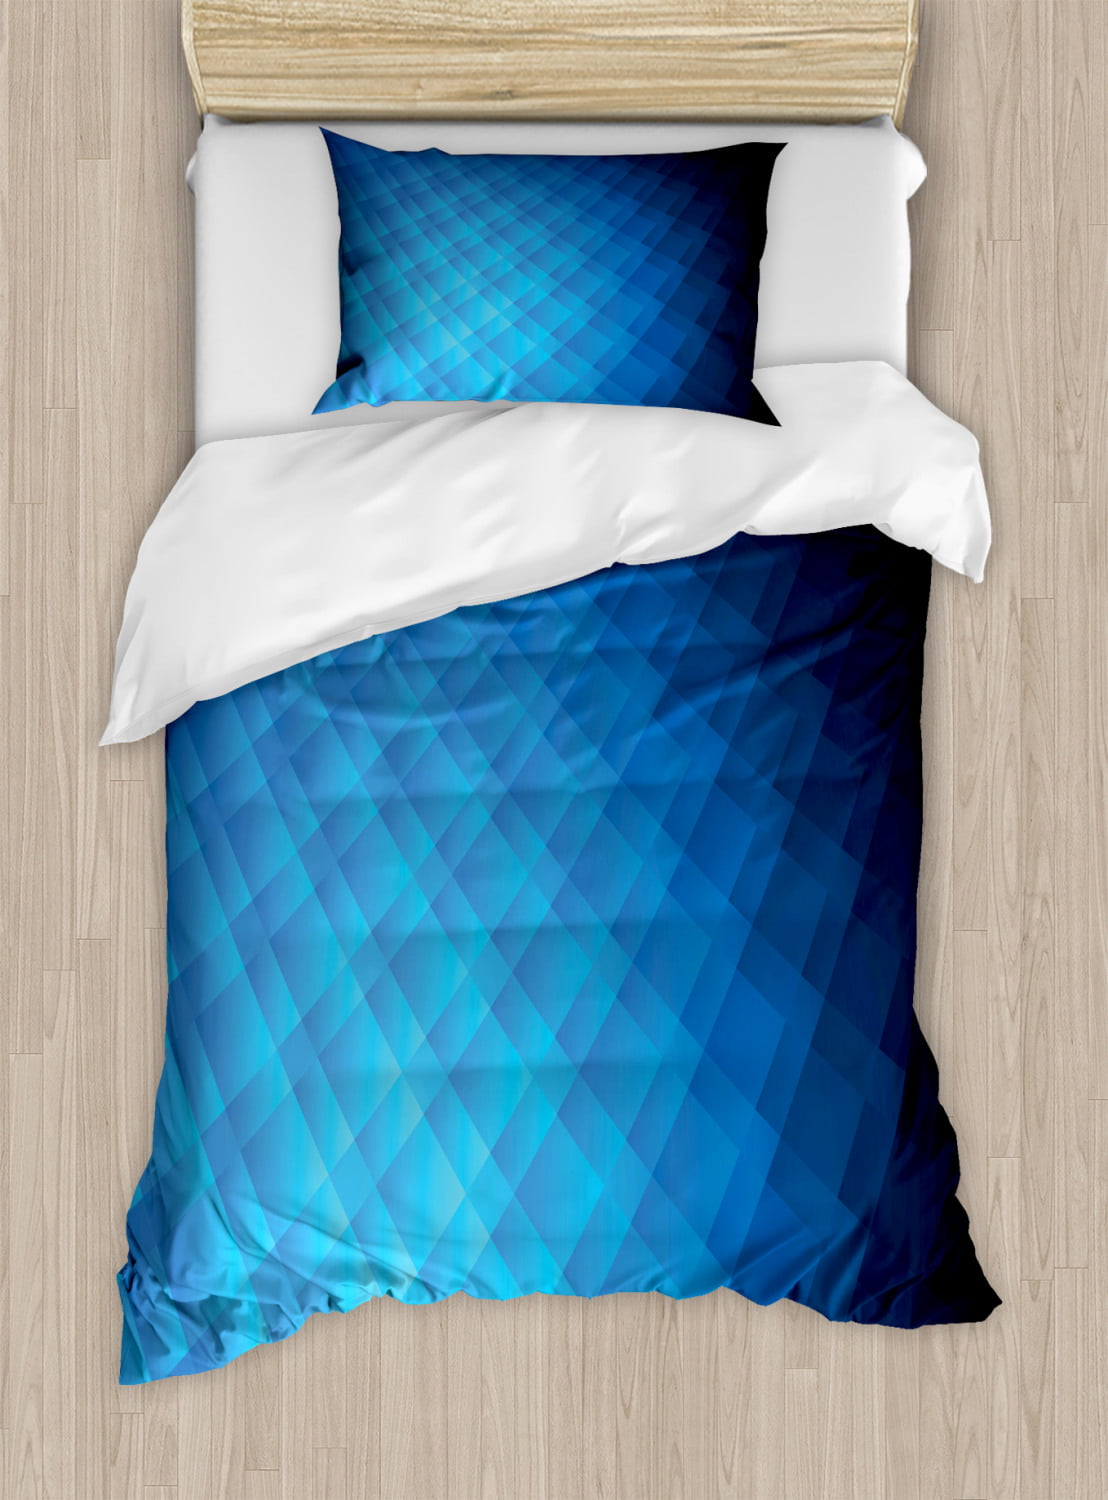 Geometric Moon Cushion Cover modern magical navy blue cotton canvas 